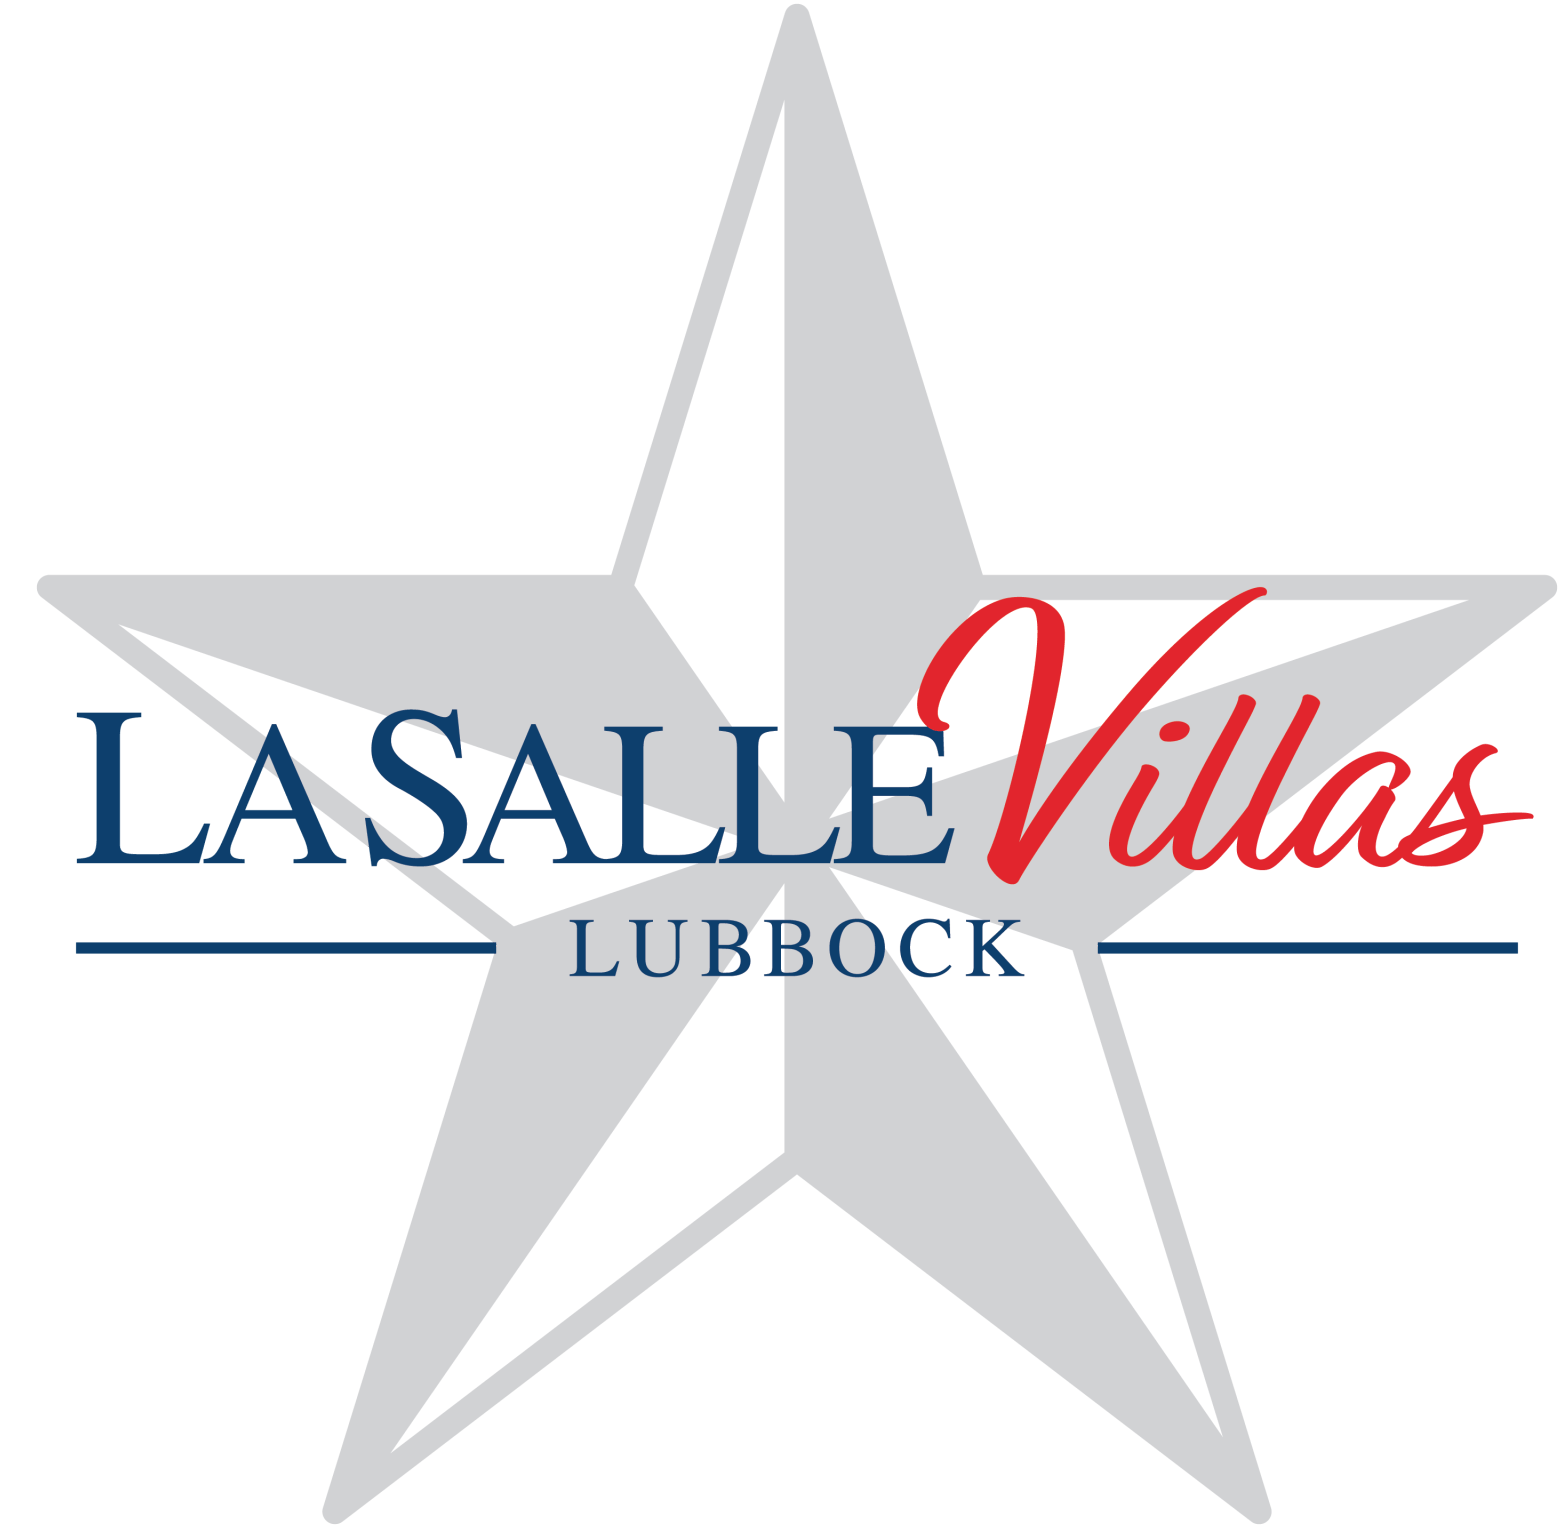 LaSalle Villas Logo in Hero Image